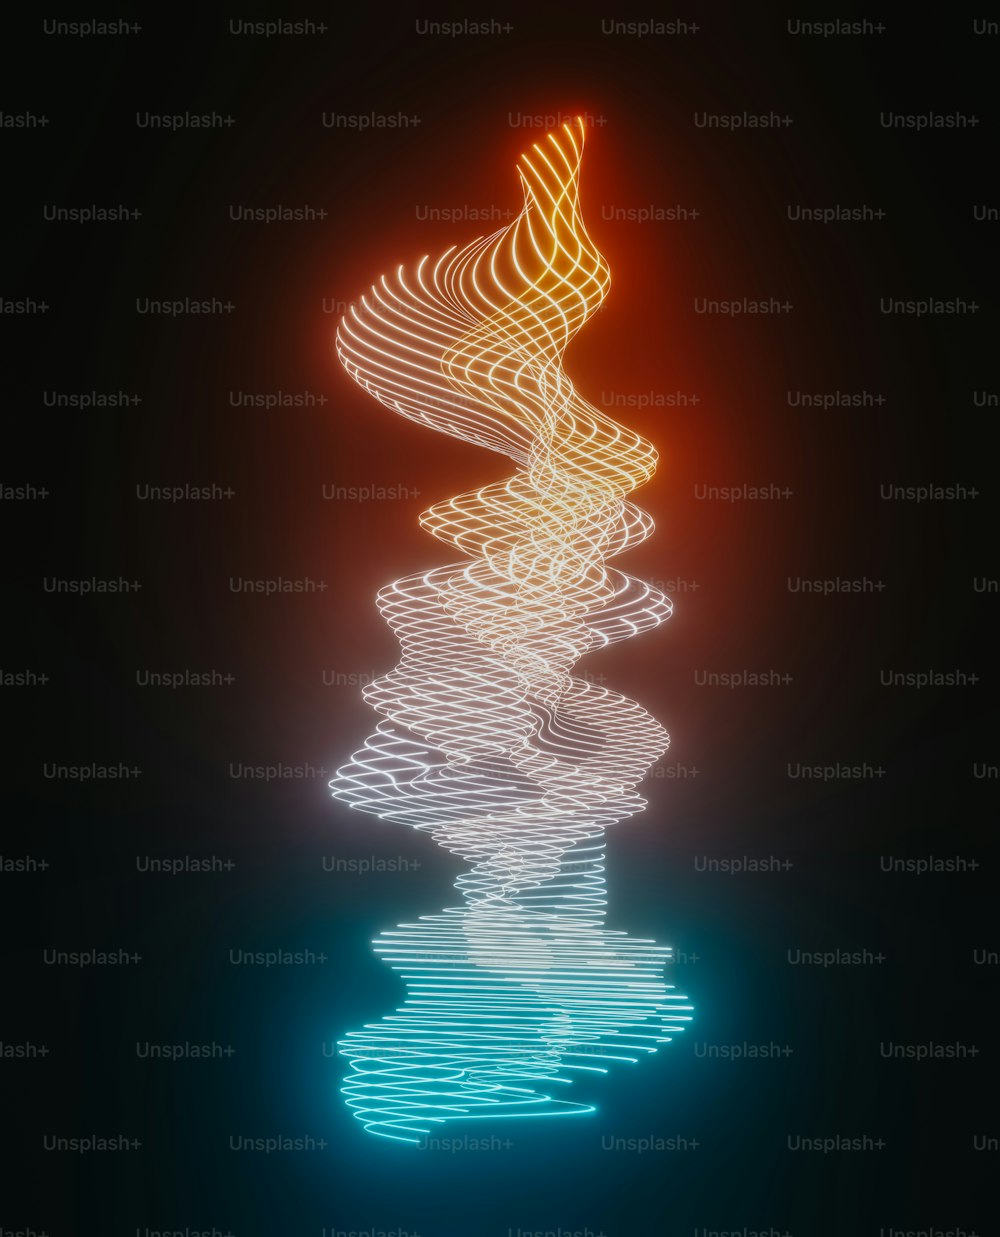 Ein abstraktes Bild einer Spirale im Wasser